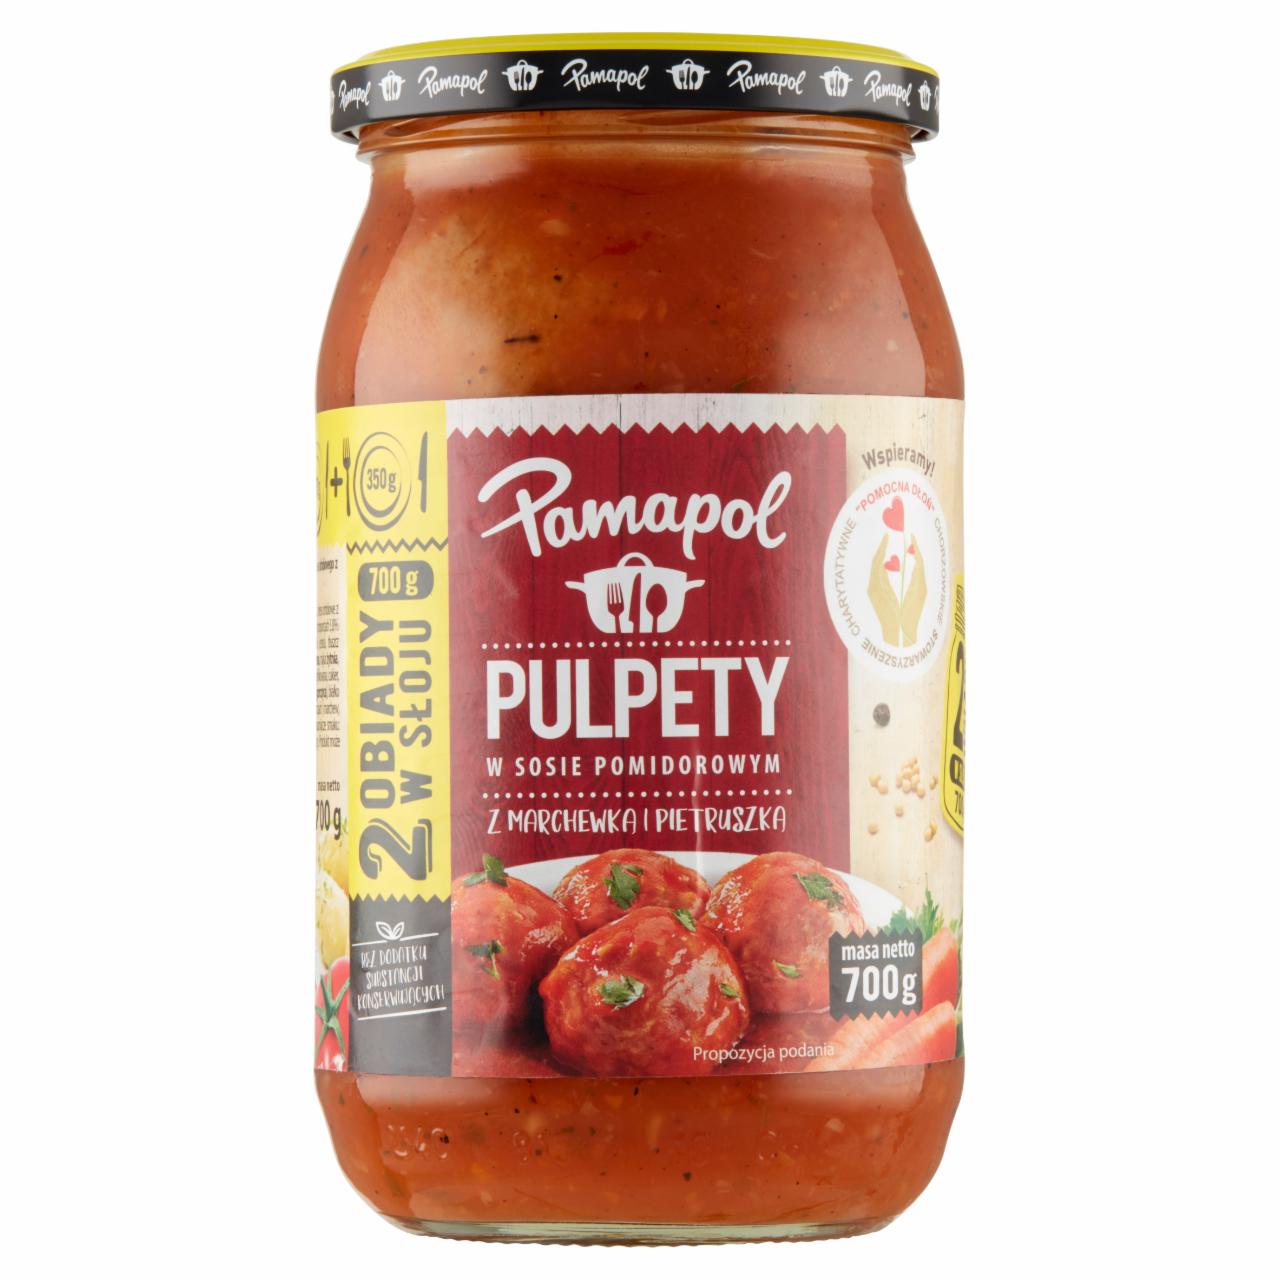 Zdjęcia - Pamapol Pulpety w sosie pomidorowym z marchewką i pietruszką 700 g